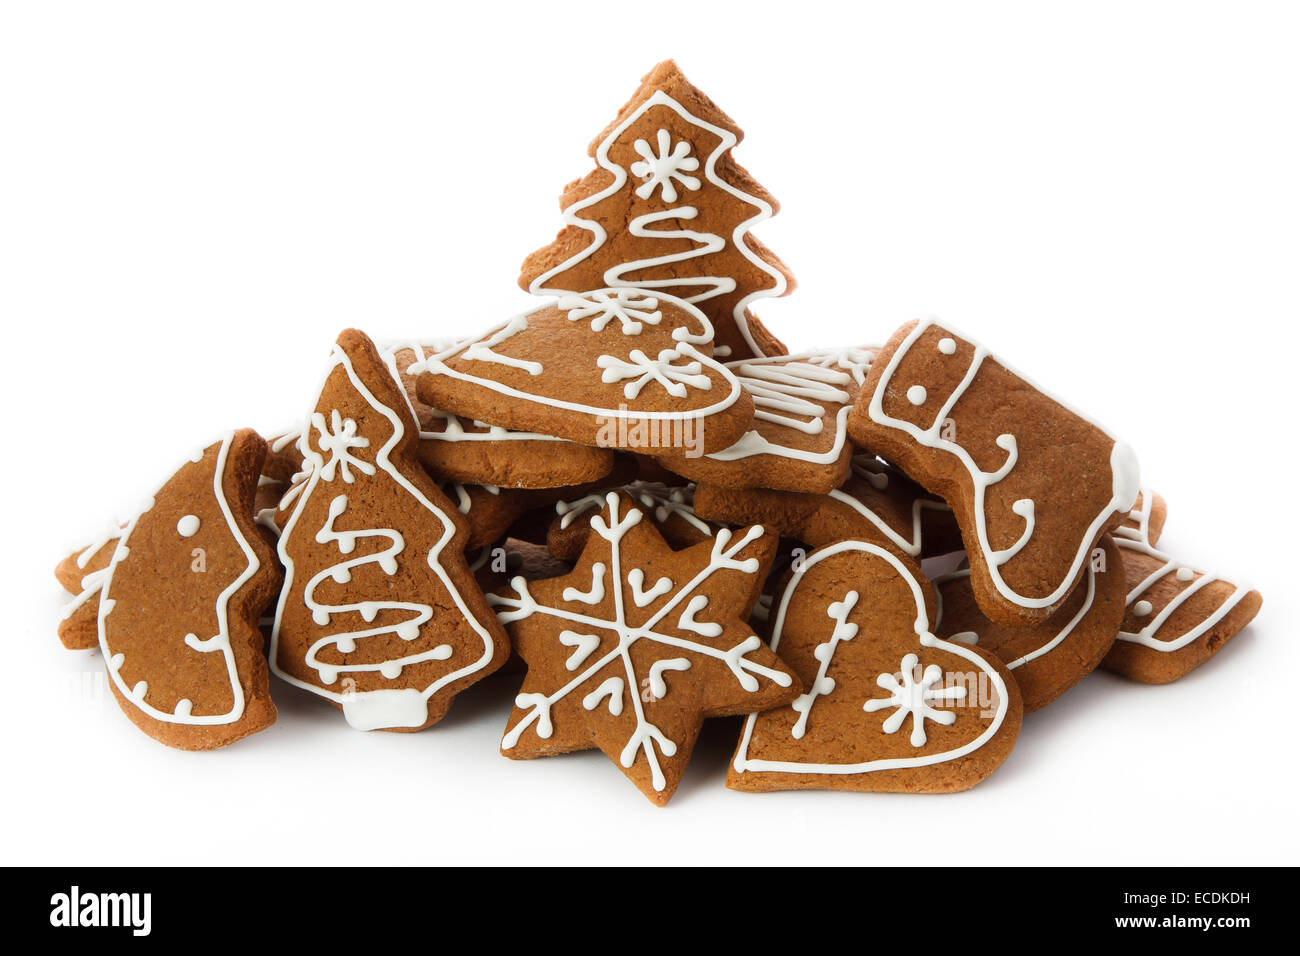 Des cookies de noël - gingerbread Banque D'Images